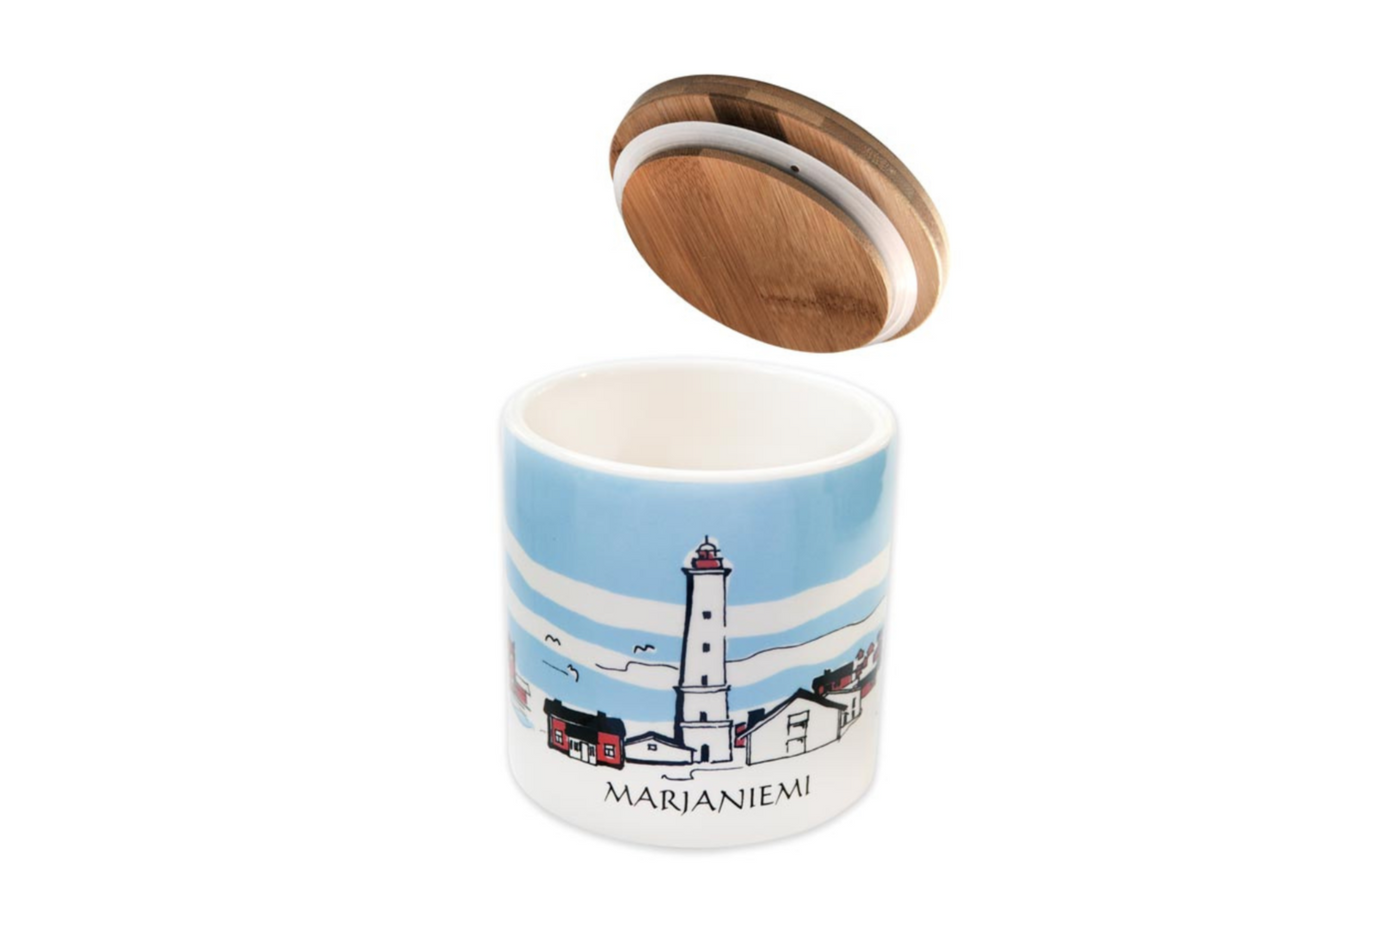 Suomen Lighthouse jars